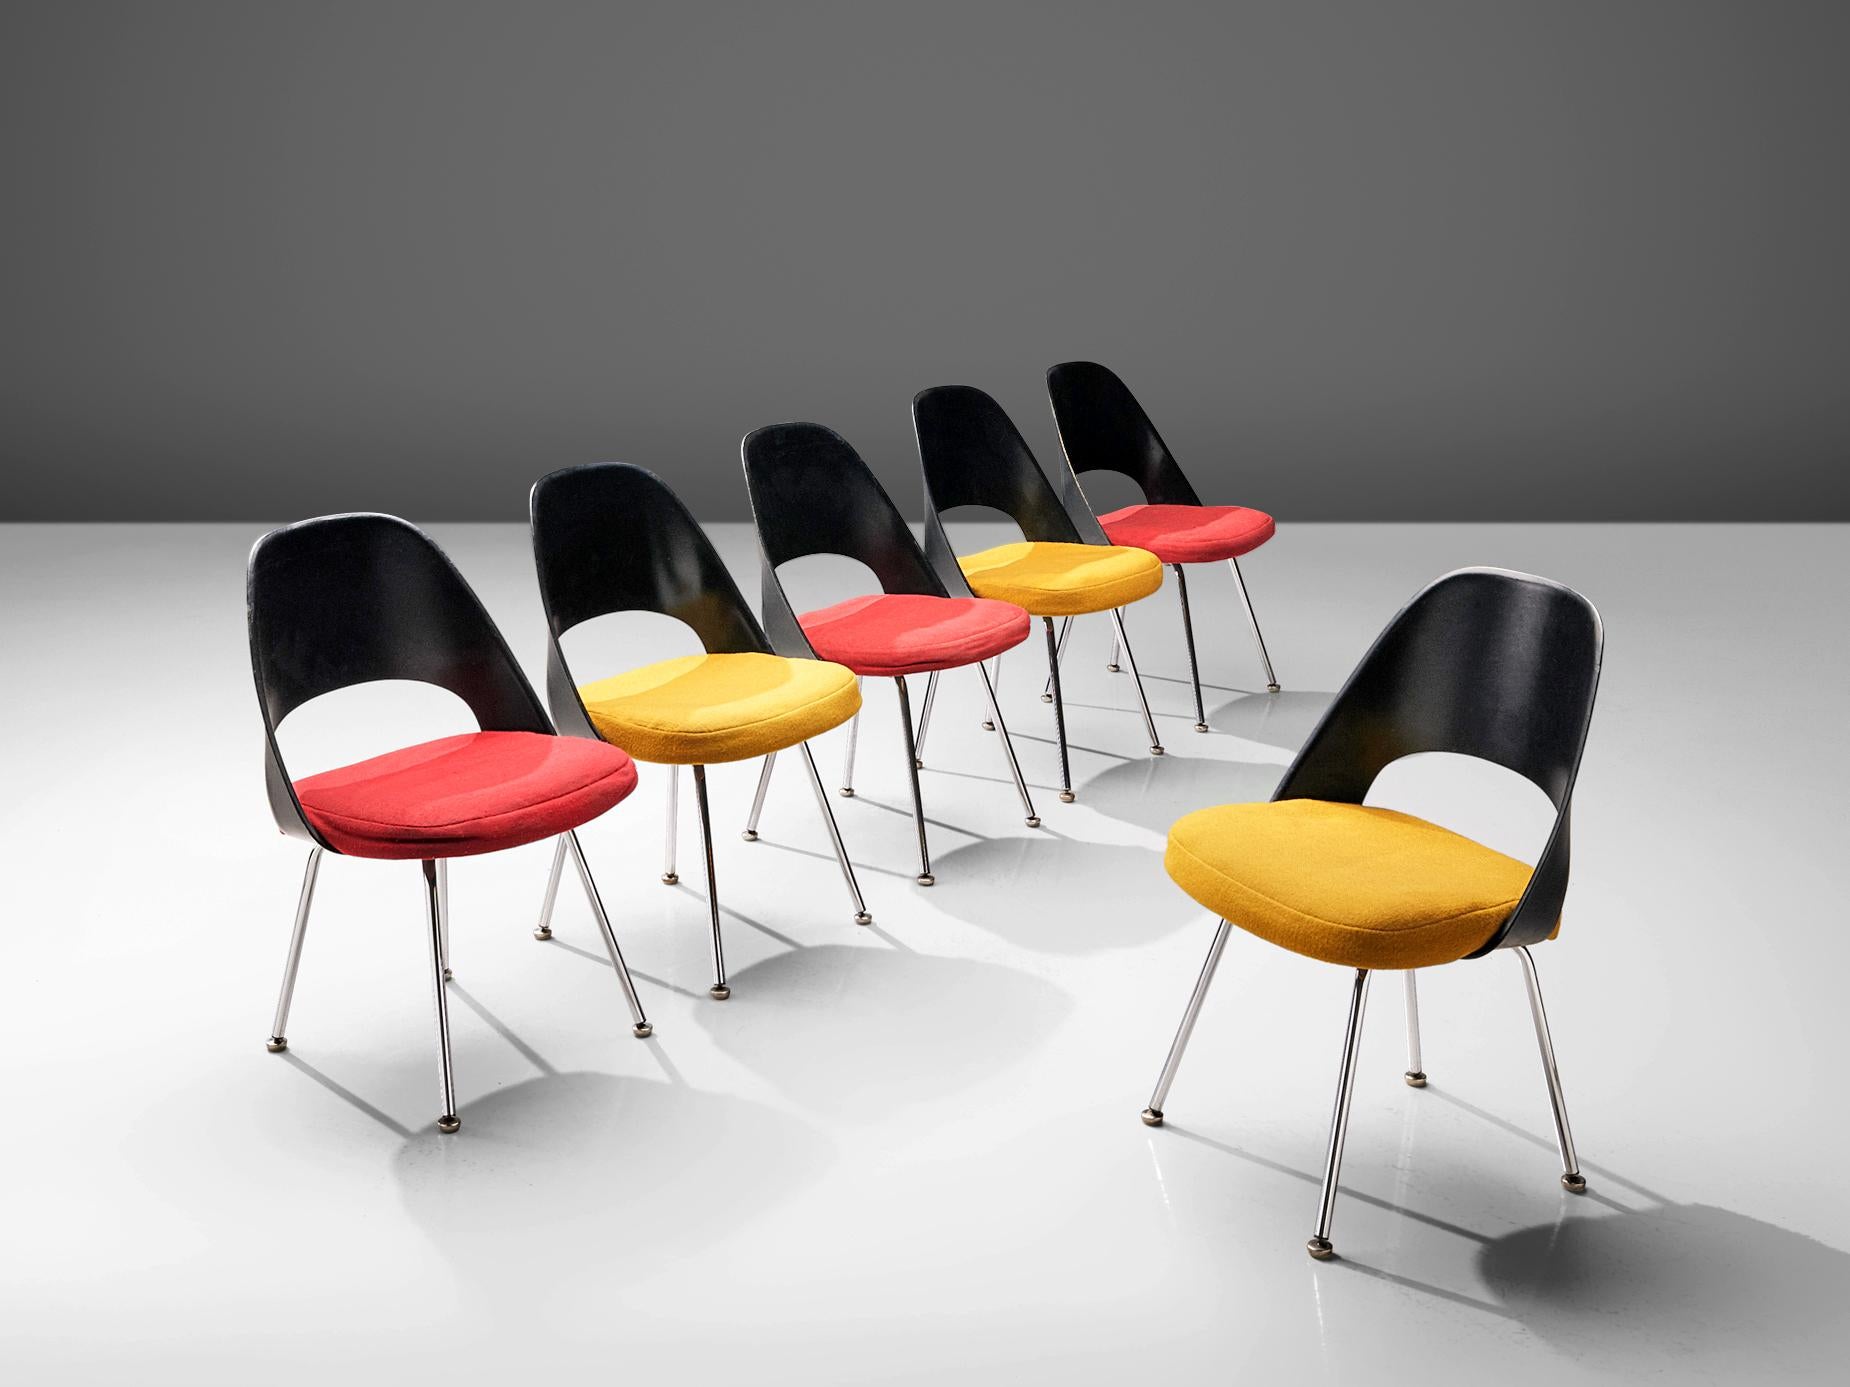 Eero Saarinen pour Knoll International, ensemble de six chaises de salle à manger, modèle '72', acier chromé, fibre de verre, tissu,  États-Unis, conception 1948, production 1970 

Chaises à manger modèle '72' conçues par Eero Saarinen. Les chaises